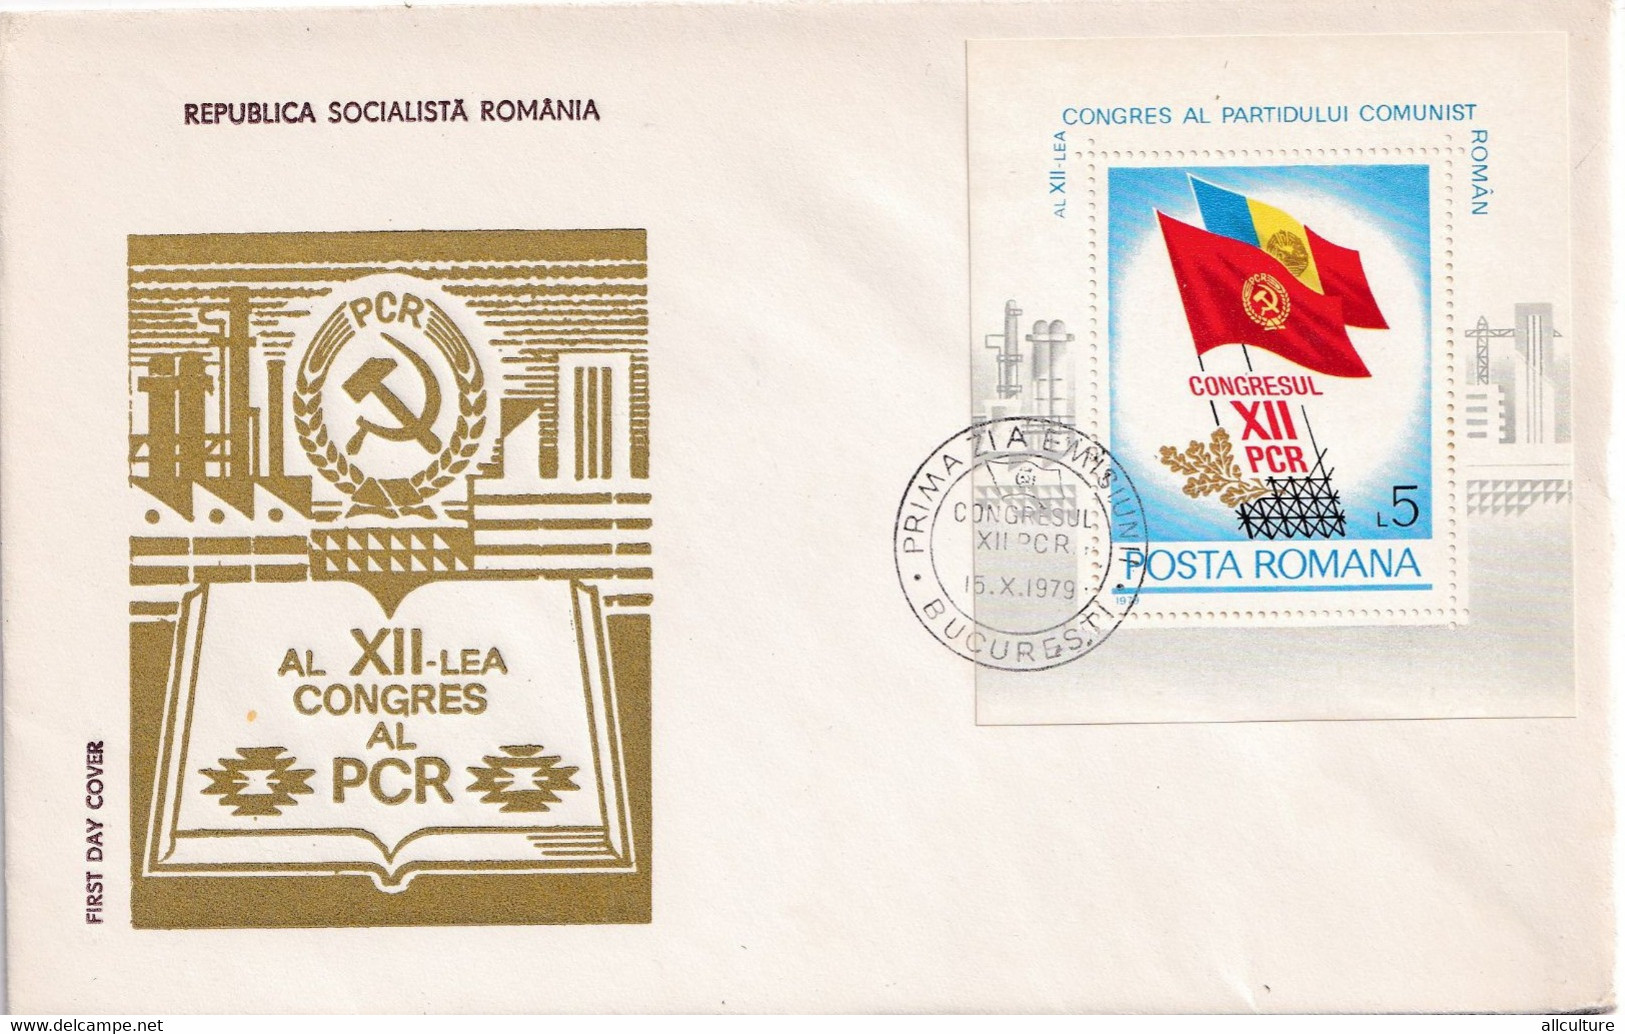 A2667- Al XII-lea Congres Al PCR, Partidul Comunist Romania, Republica Socialista Romania, Bucuresti 1979 FDC - FDC